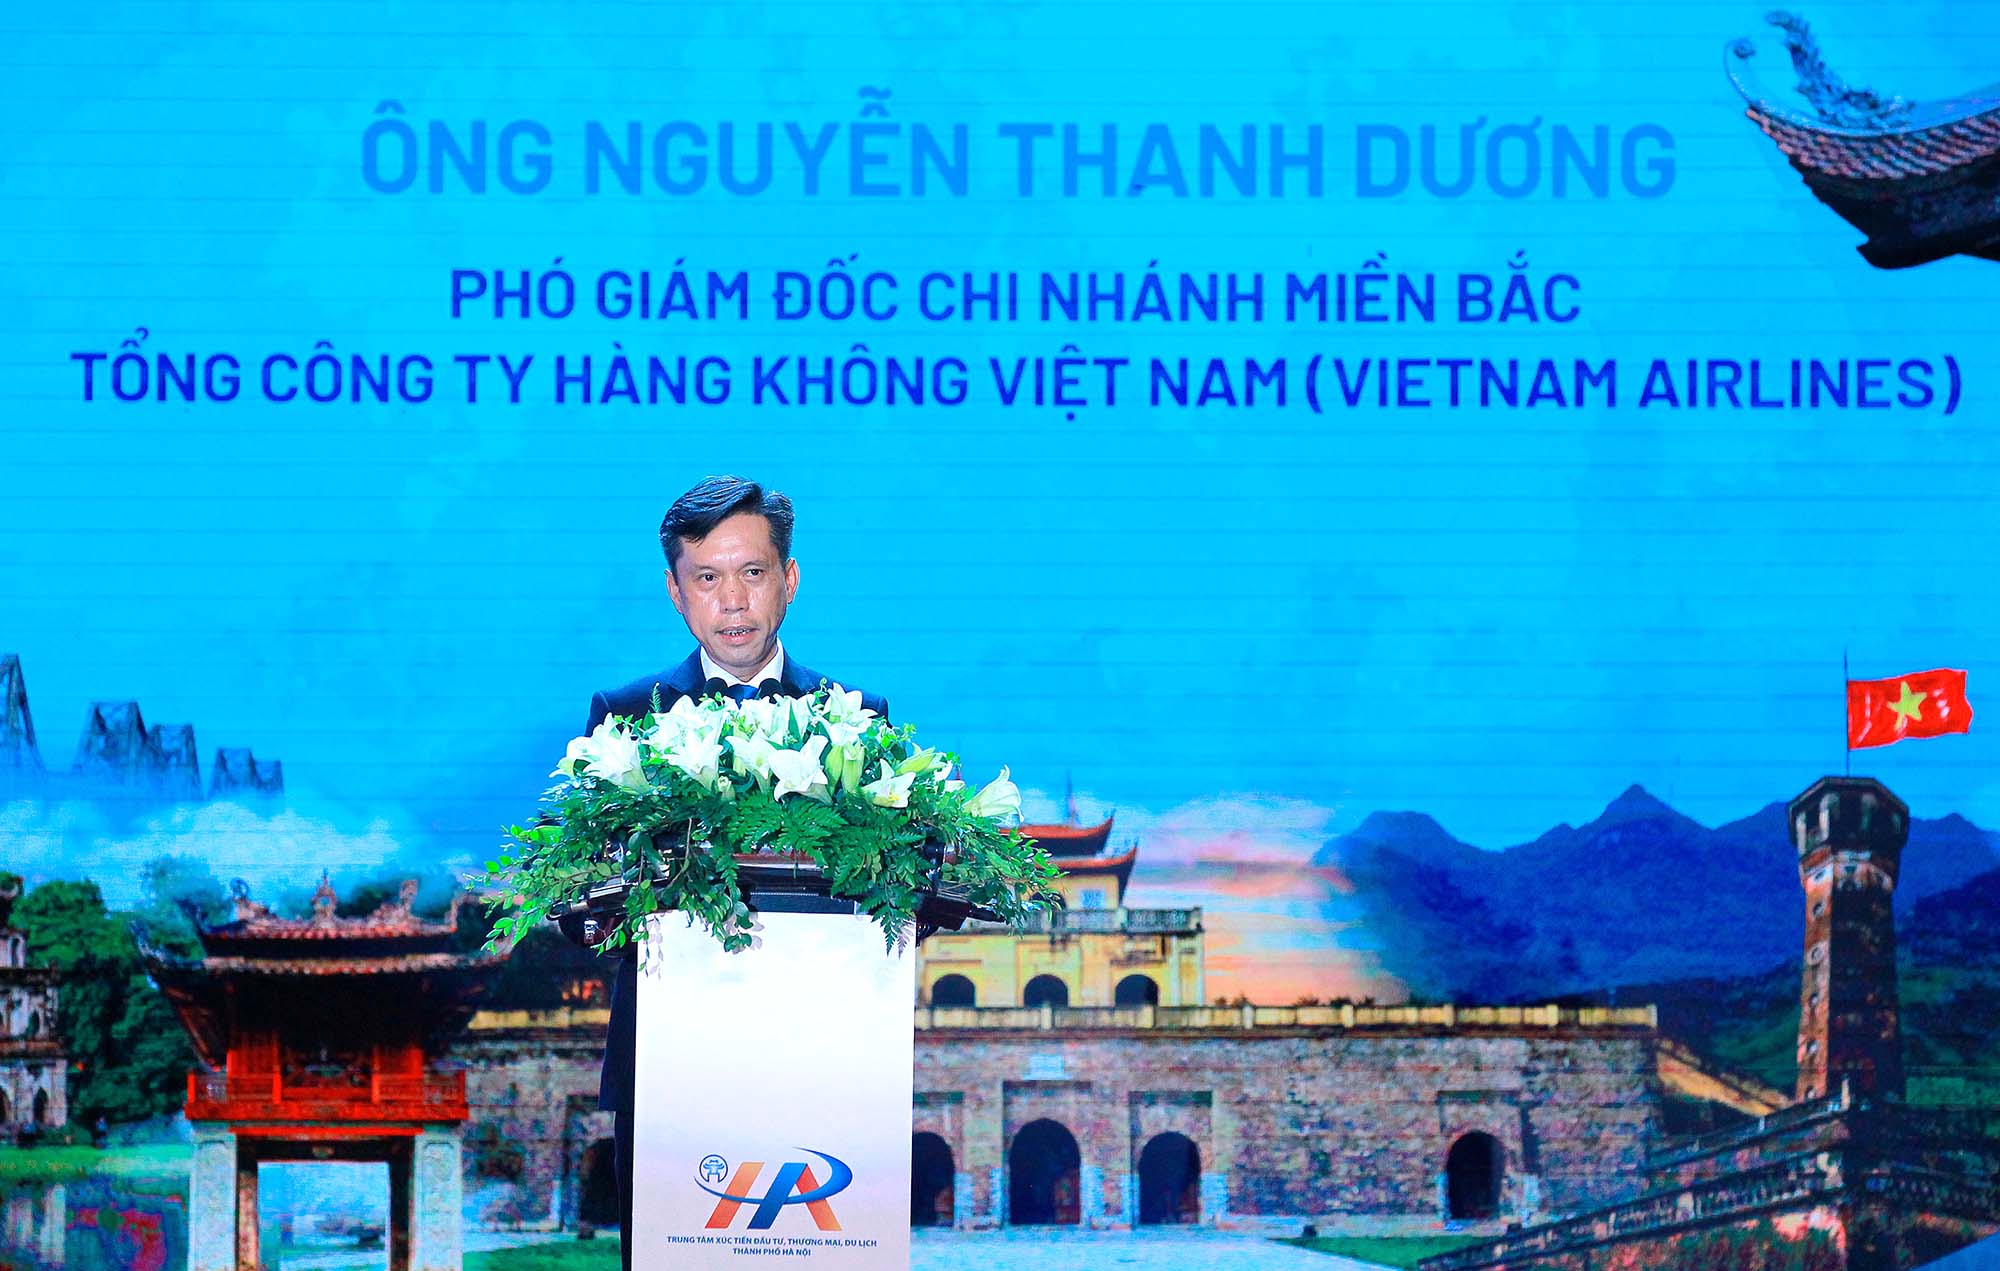 Ông Nguyễn Thanh Dương